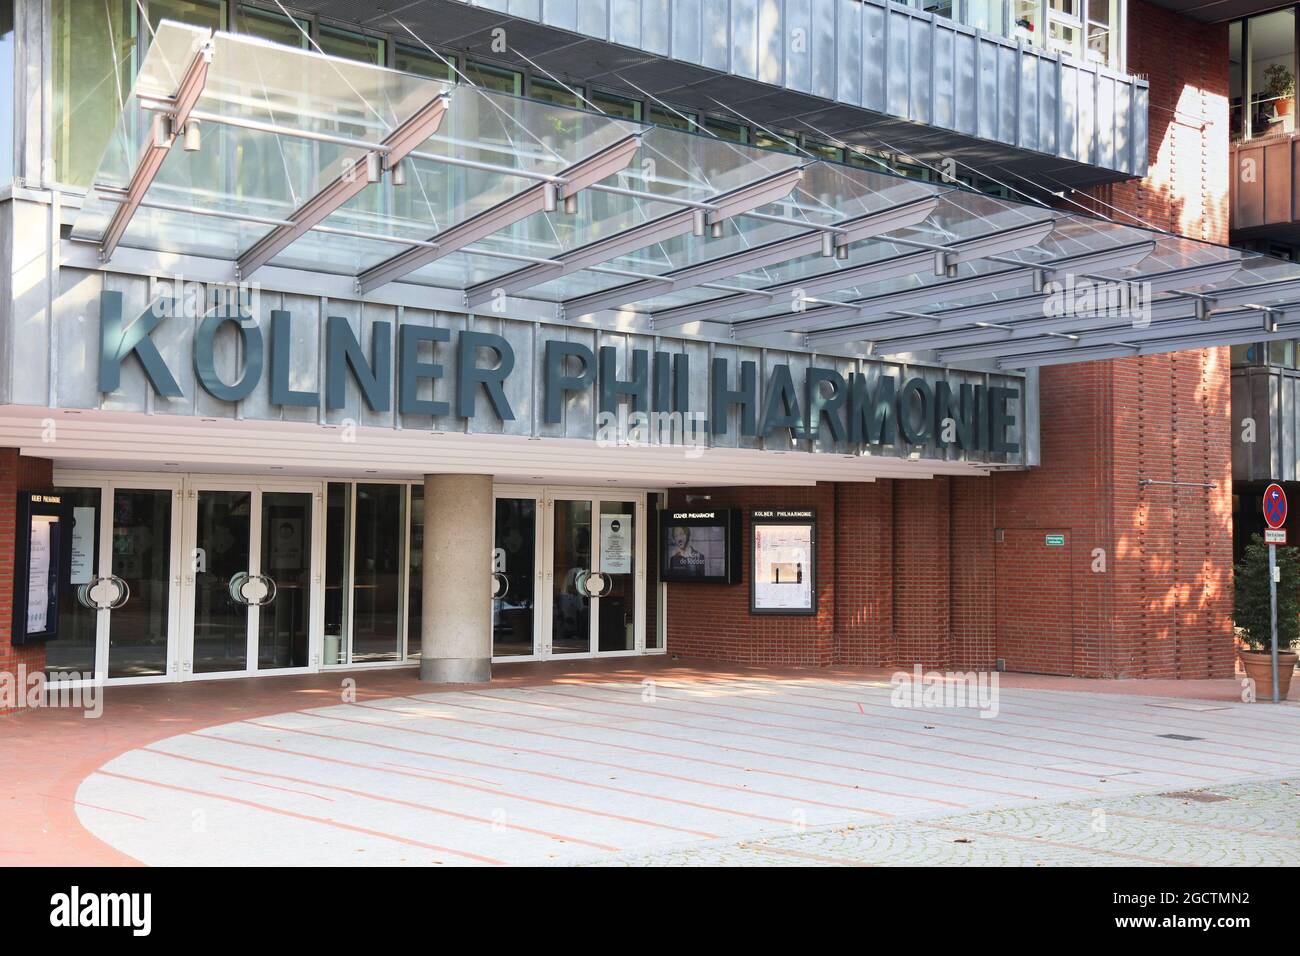 COLOGNE, ALLEMAGNE - 22 SEPTEMBRE 2020 : Koelner Philharmonie (Orchestre philharmonique de Cologne) à Cologne, Allemagne. Cologne est la 4ème ville la plus peuplée de Banque D'Images